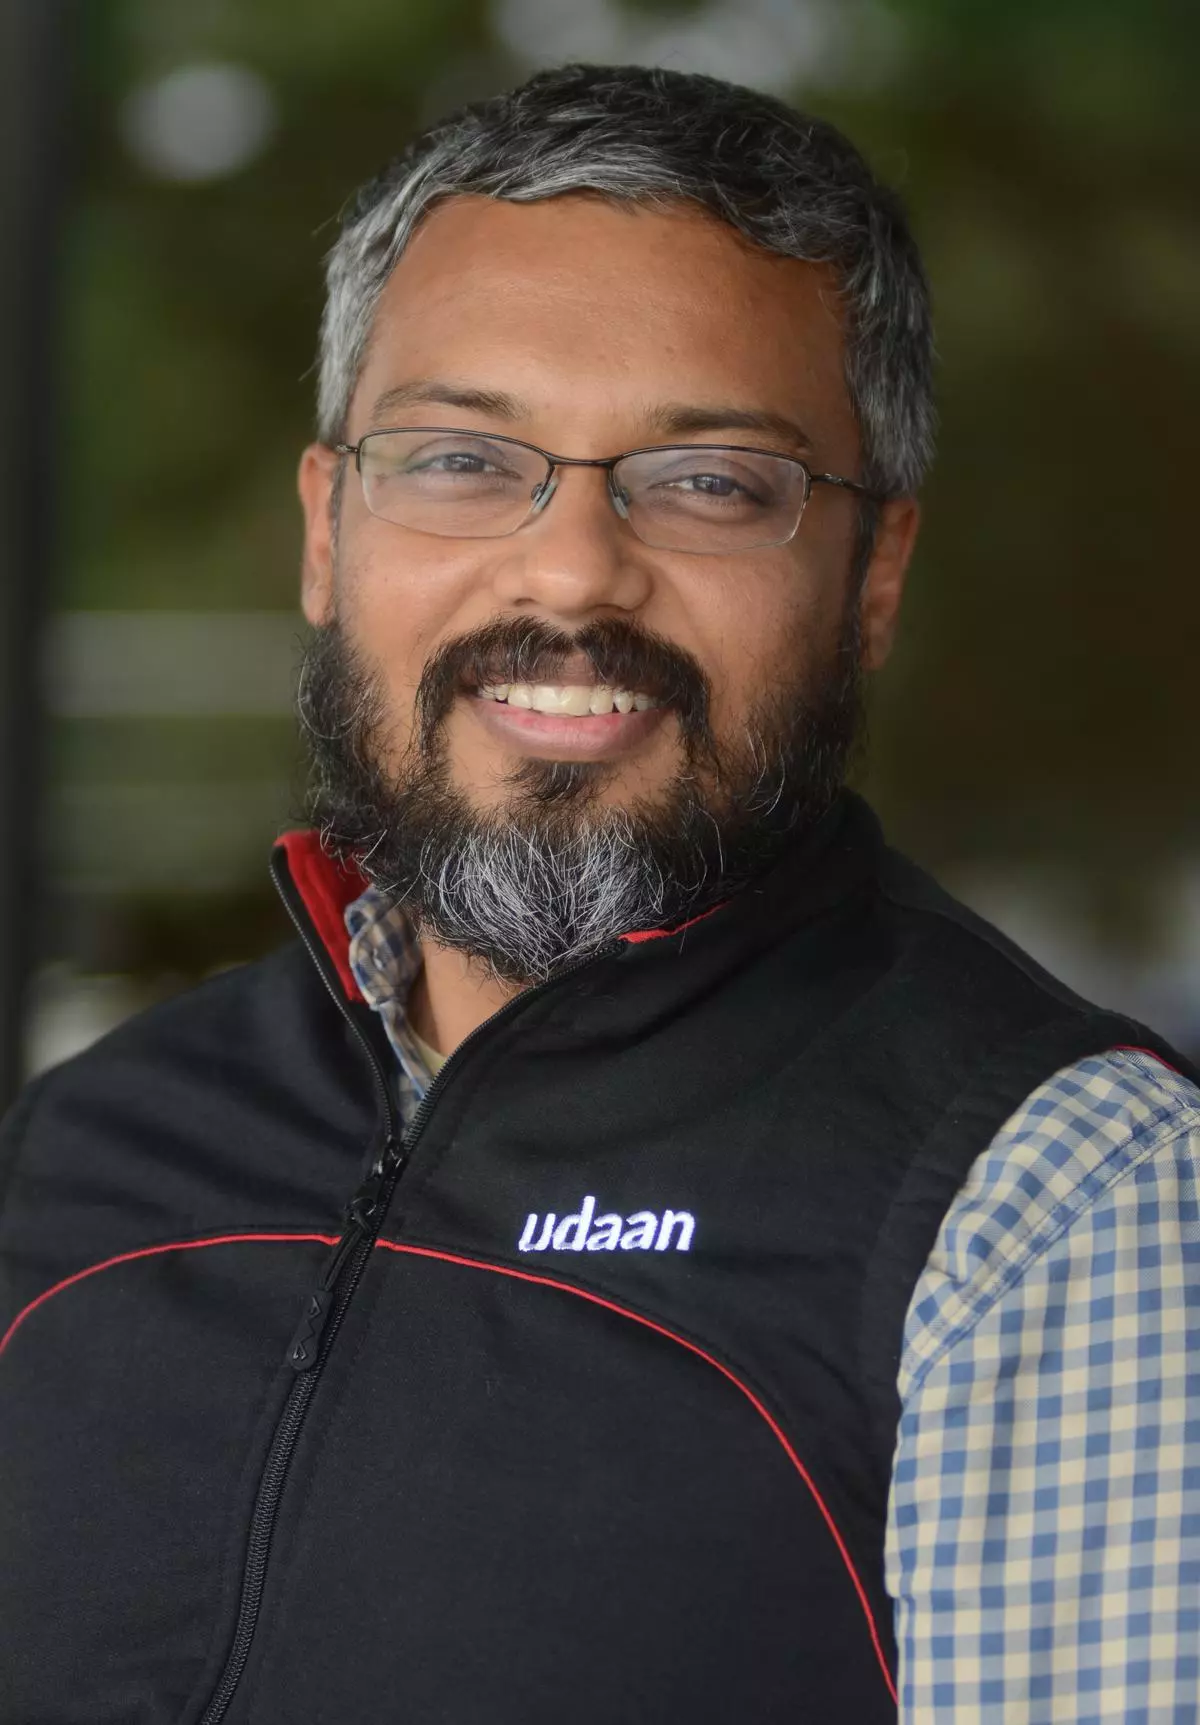 Vaibhav Gupta, CEO of udaan